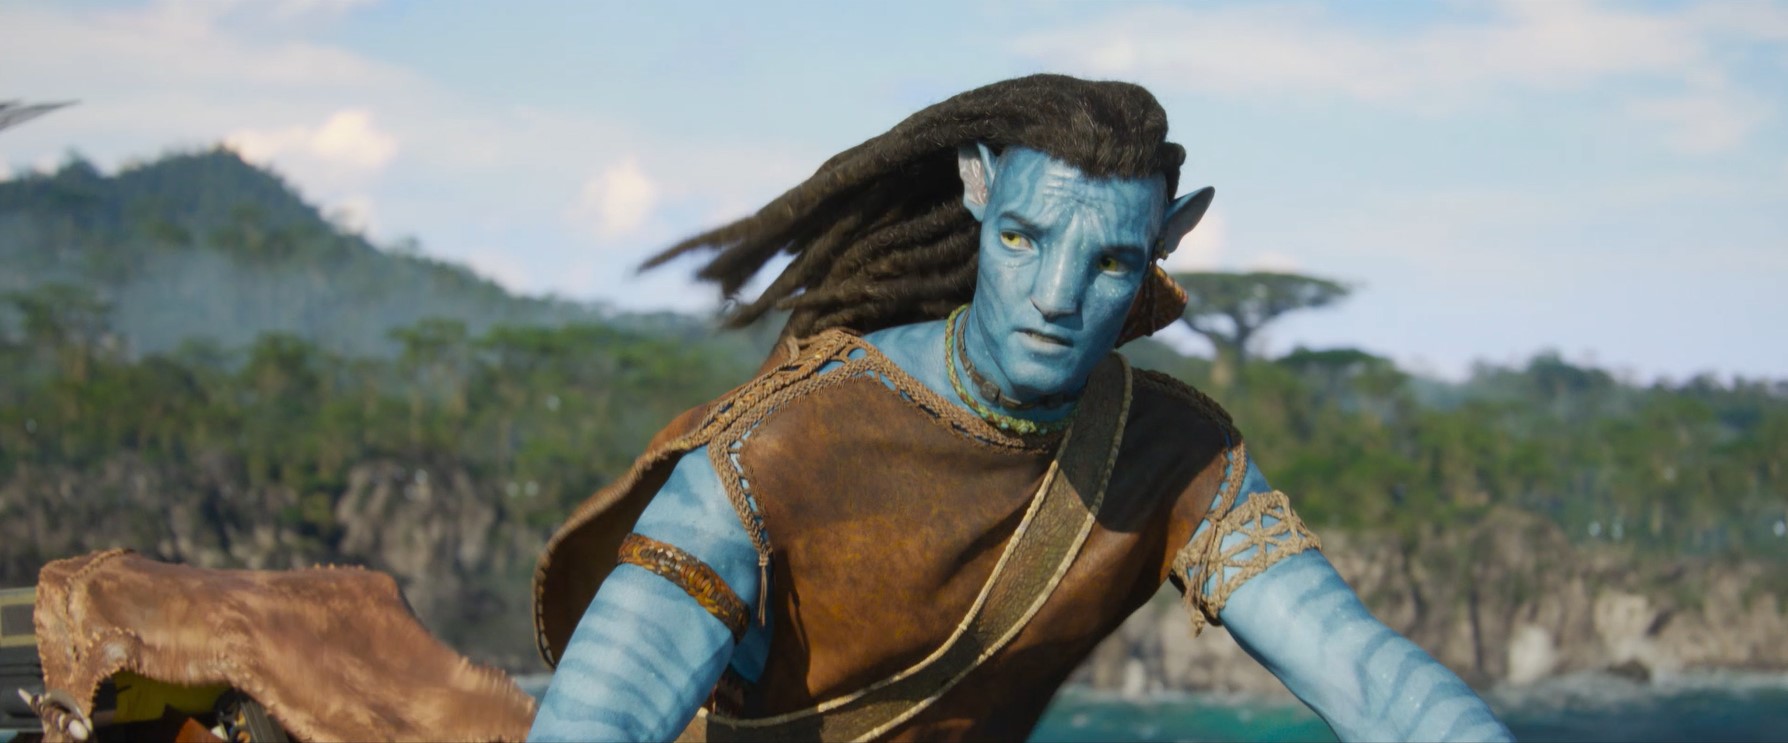 Siêu phẩm Avatar 2 ra trailer đẹp và mát rượi như dáng hình của nước - Ảnh 5.